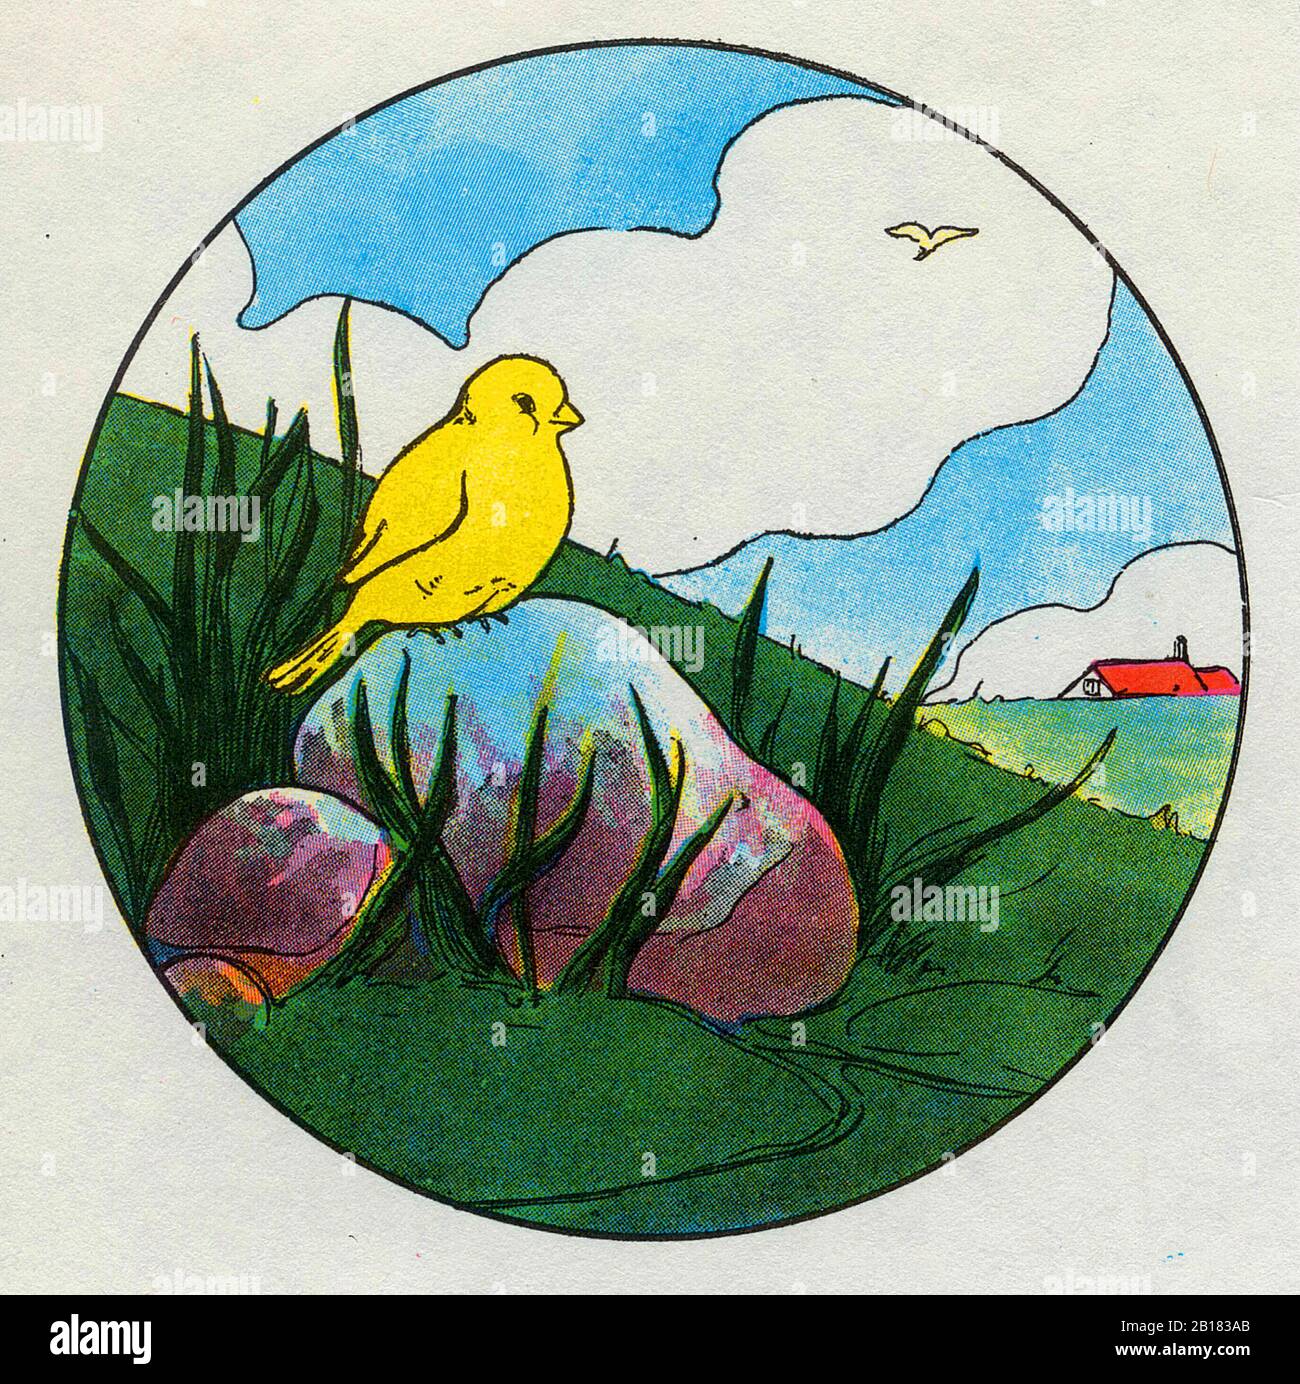 Ci sono stati due uccelli seduti su una pietra, fa, la, la, la, lal, de, la vera madre Goose Nursery Rhyme Illustrazione di Blanche Fisher Wright circa 1915 Foto Stock